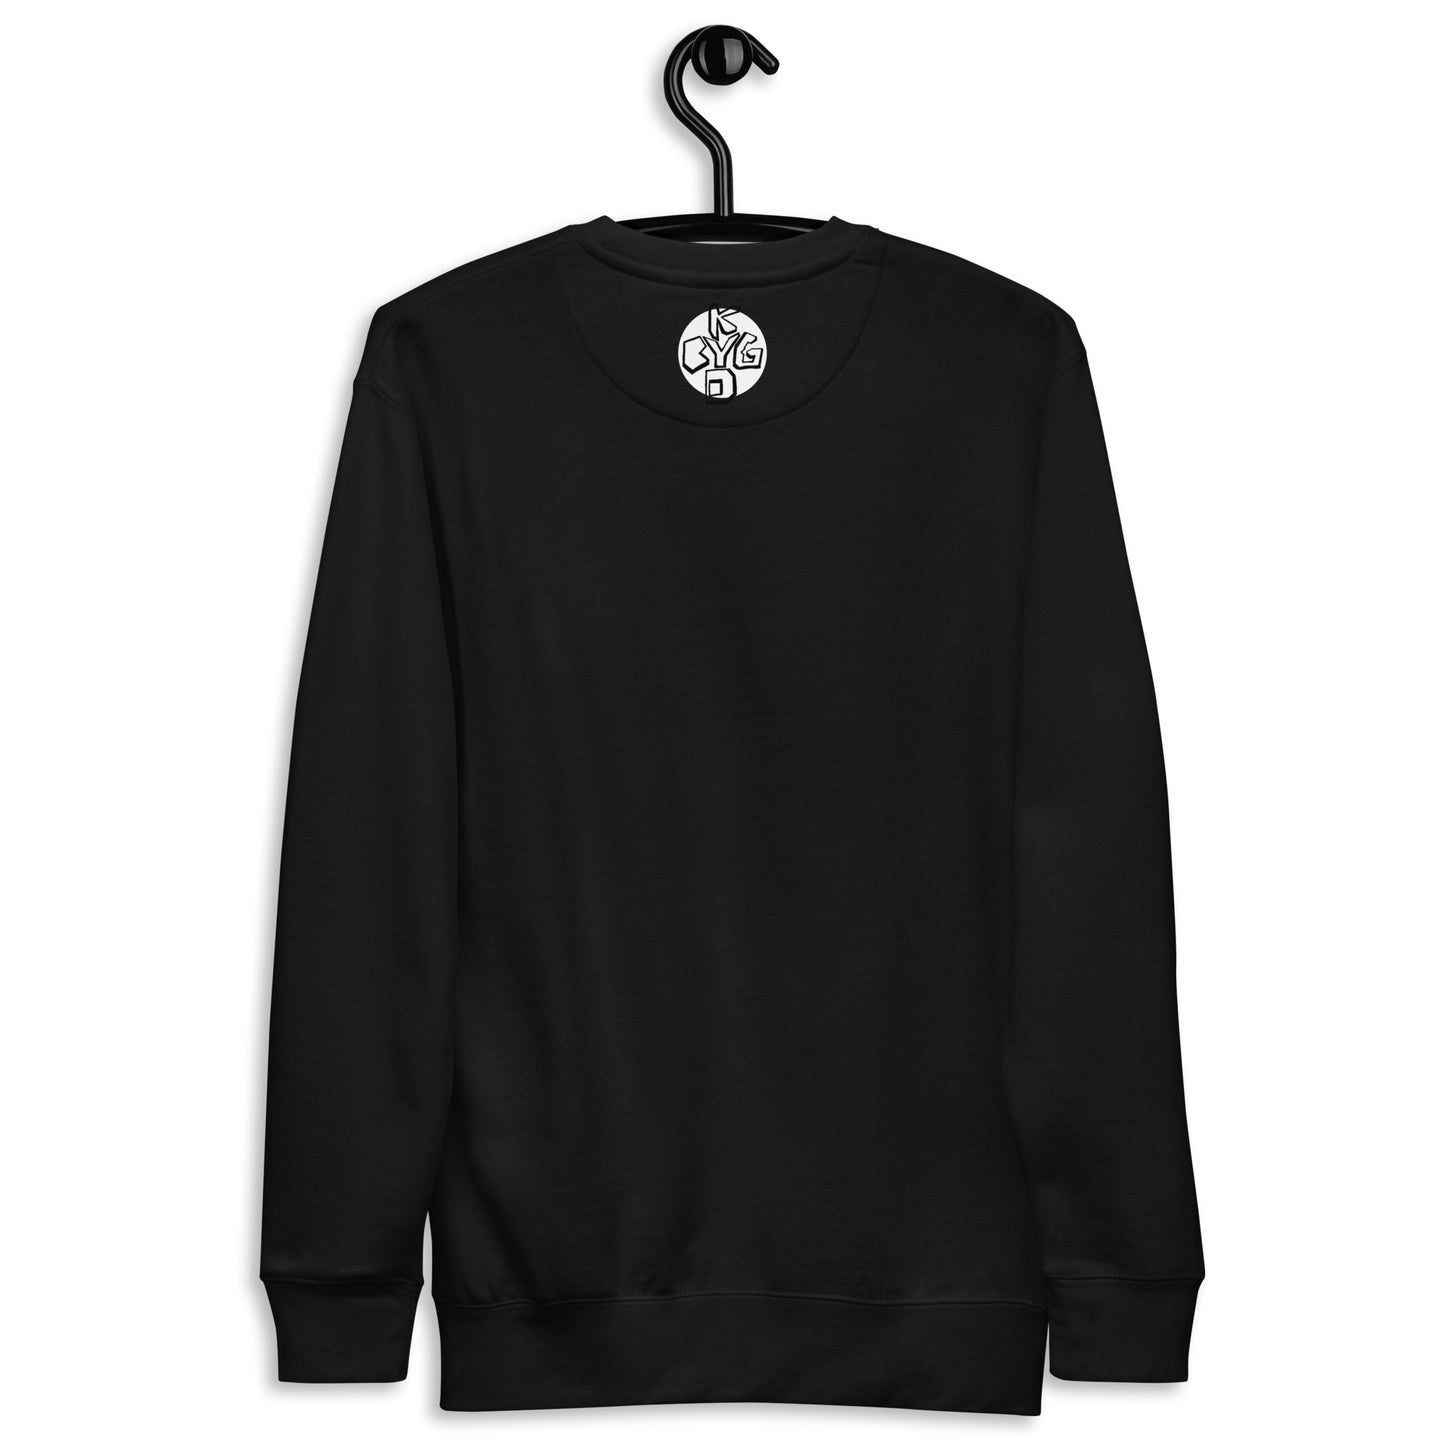 Brain Melt - Unisex Premium Sweatshirt (S-3XL)